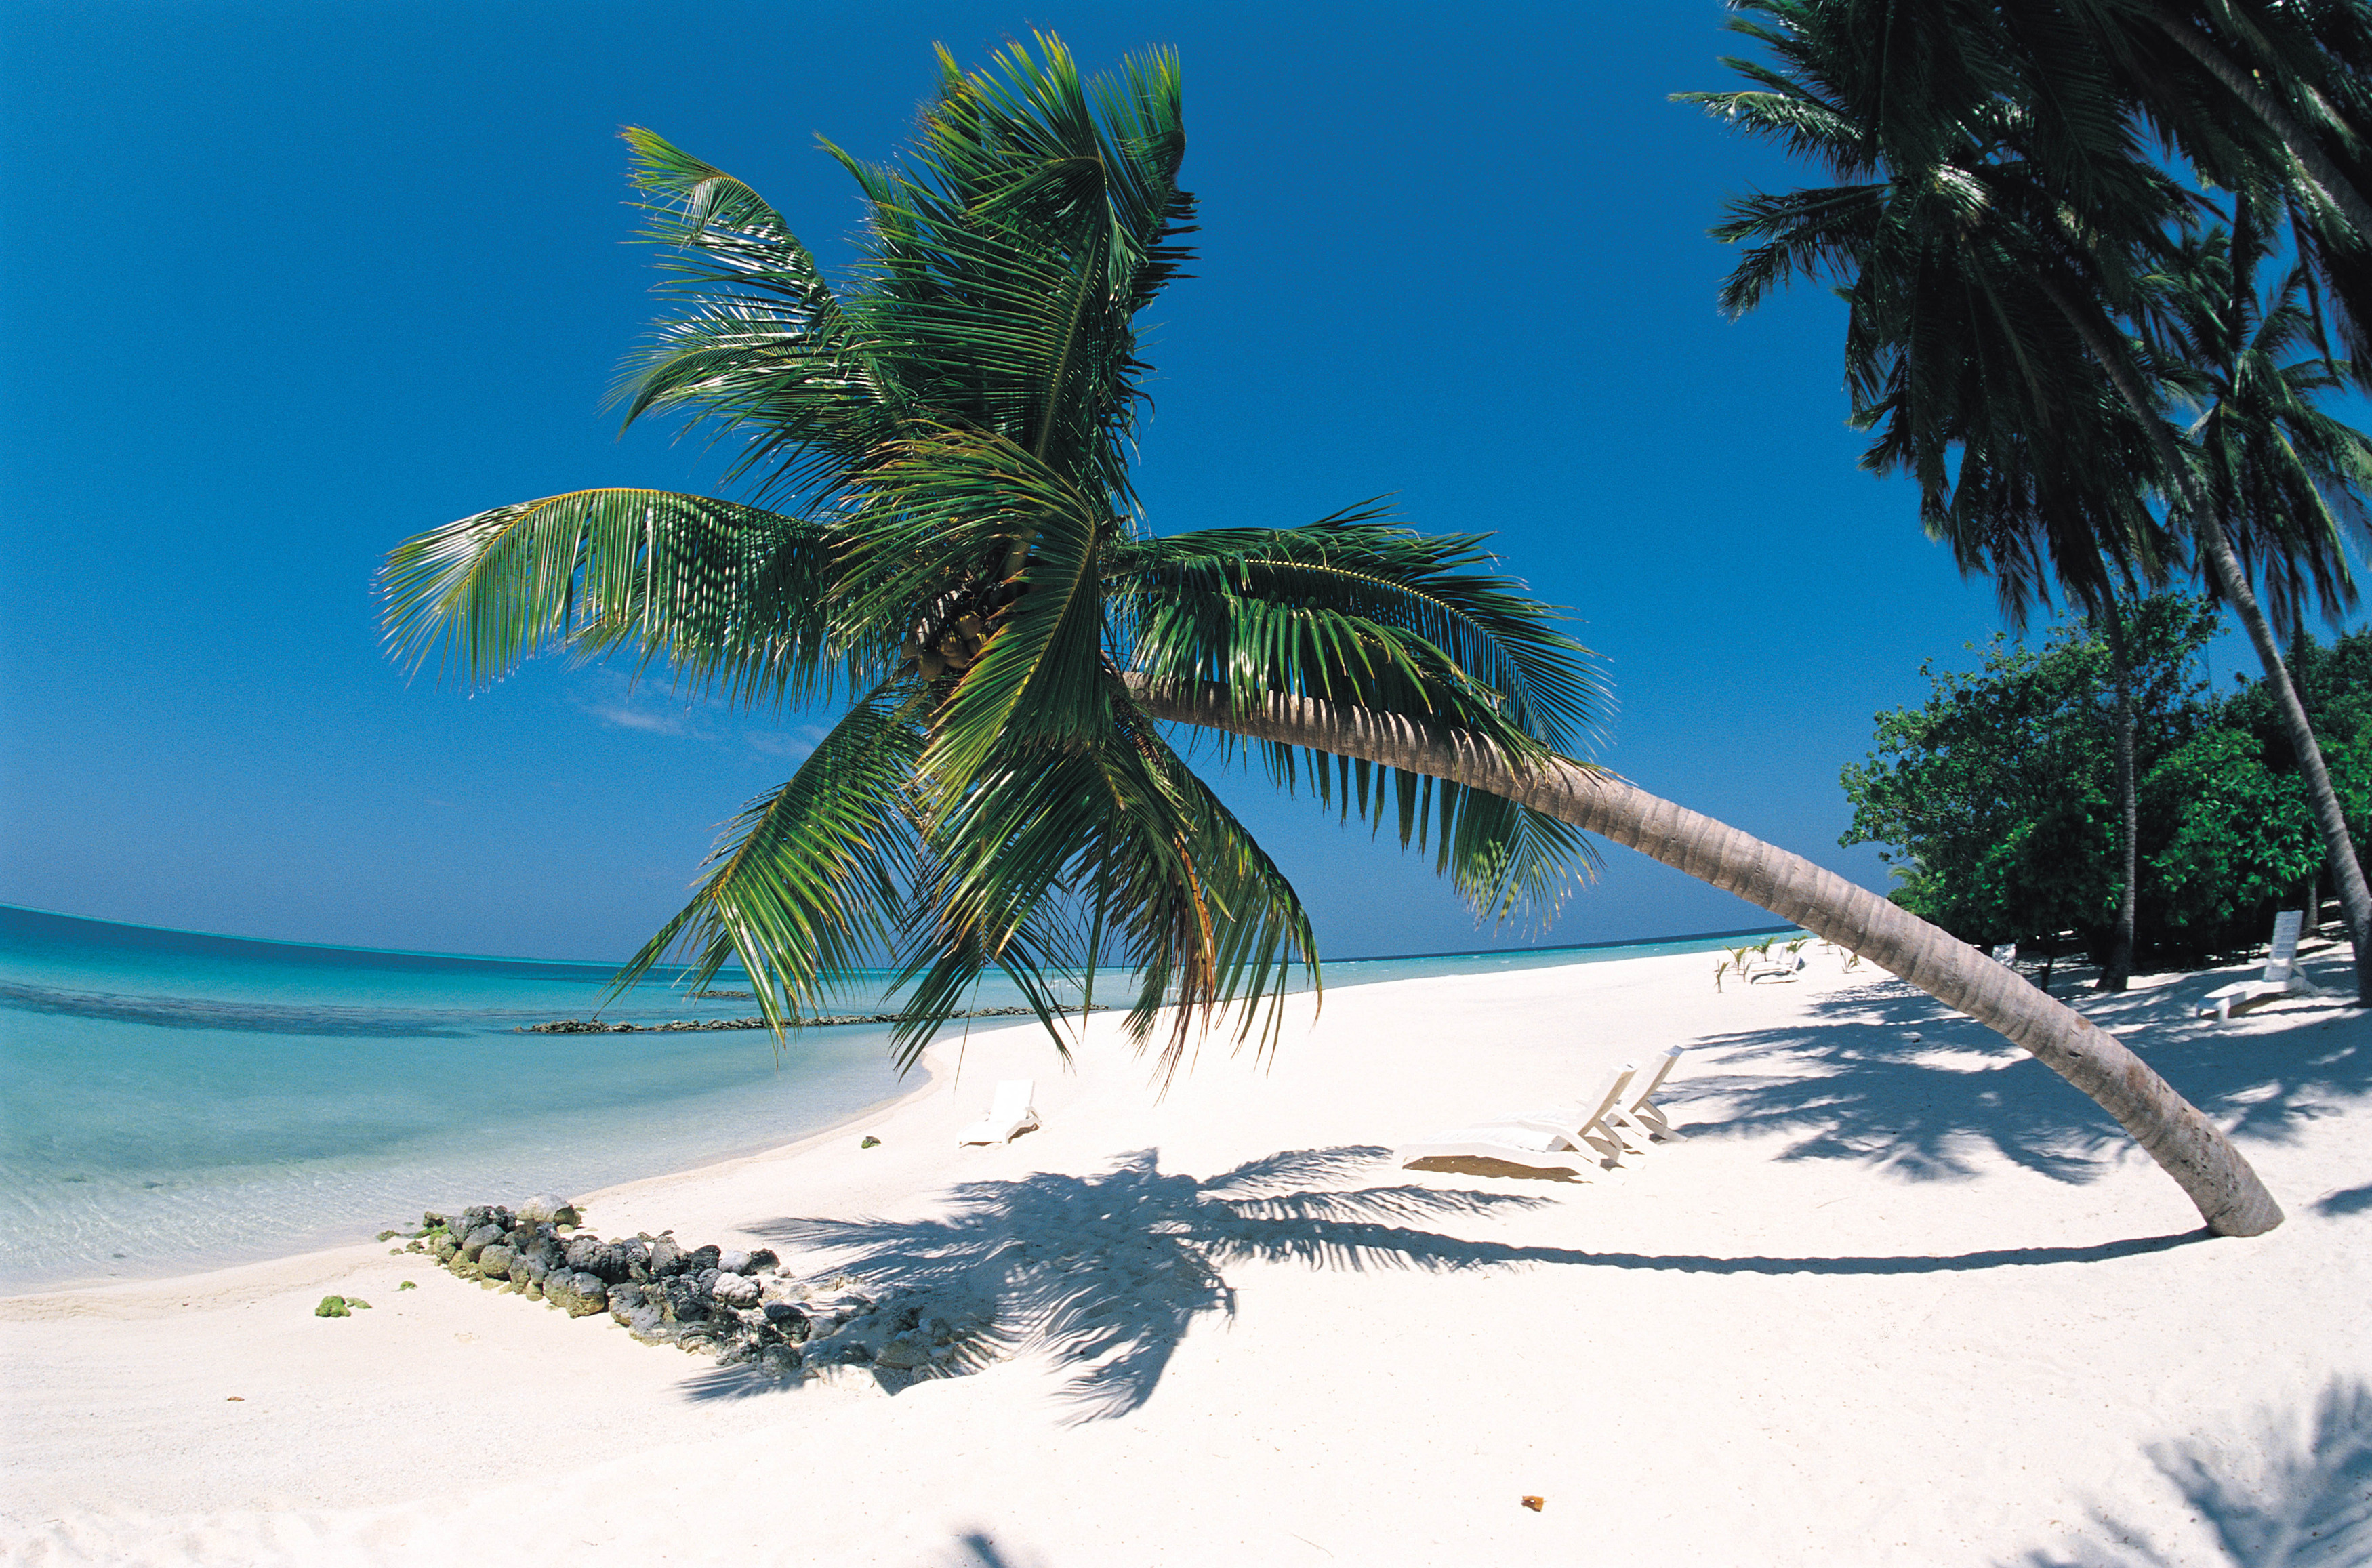 ocean, islands, palm trees, beaches - desktop wallpaper